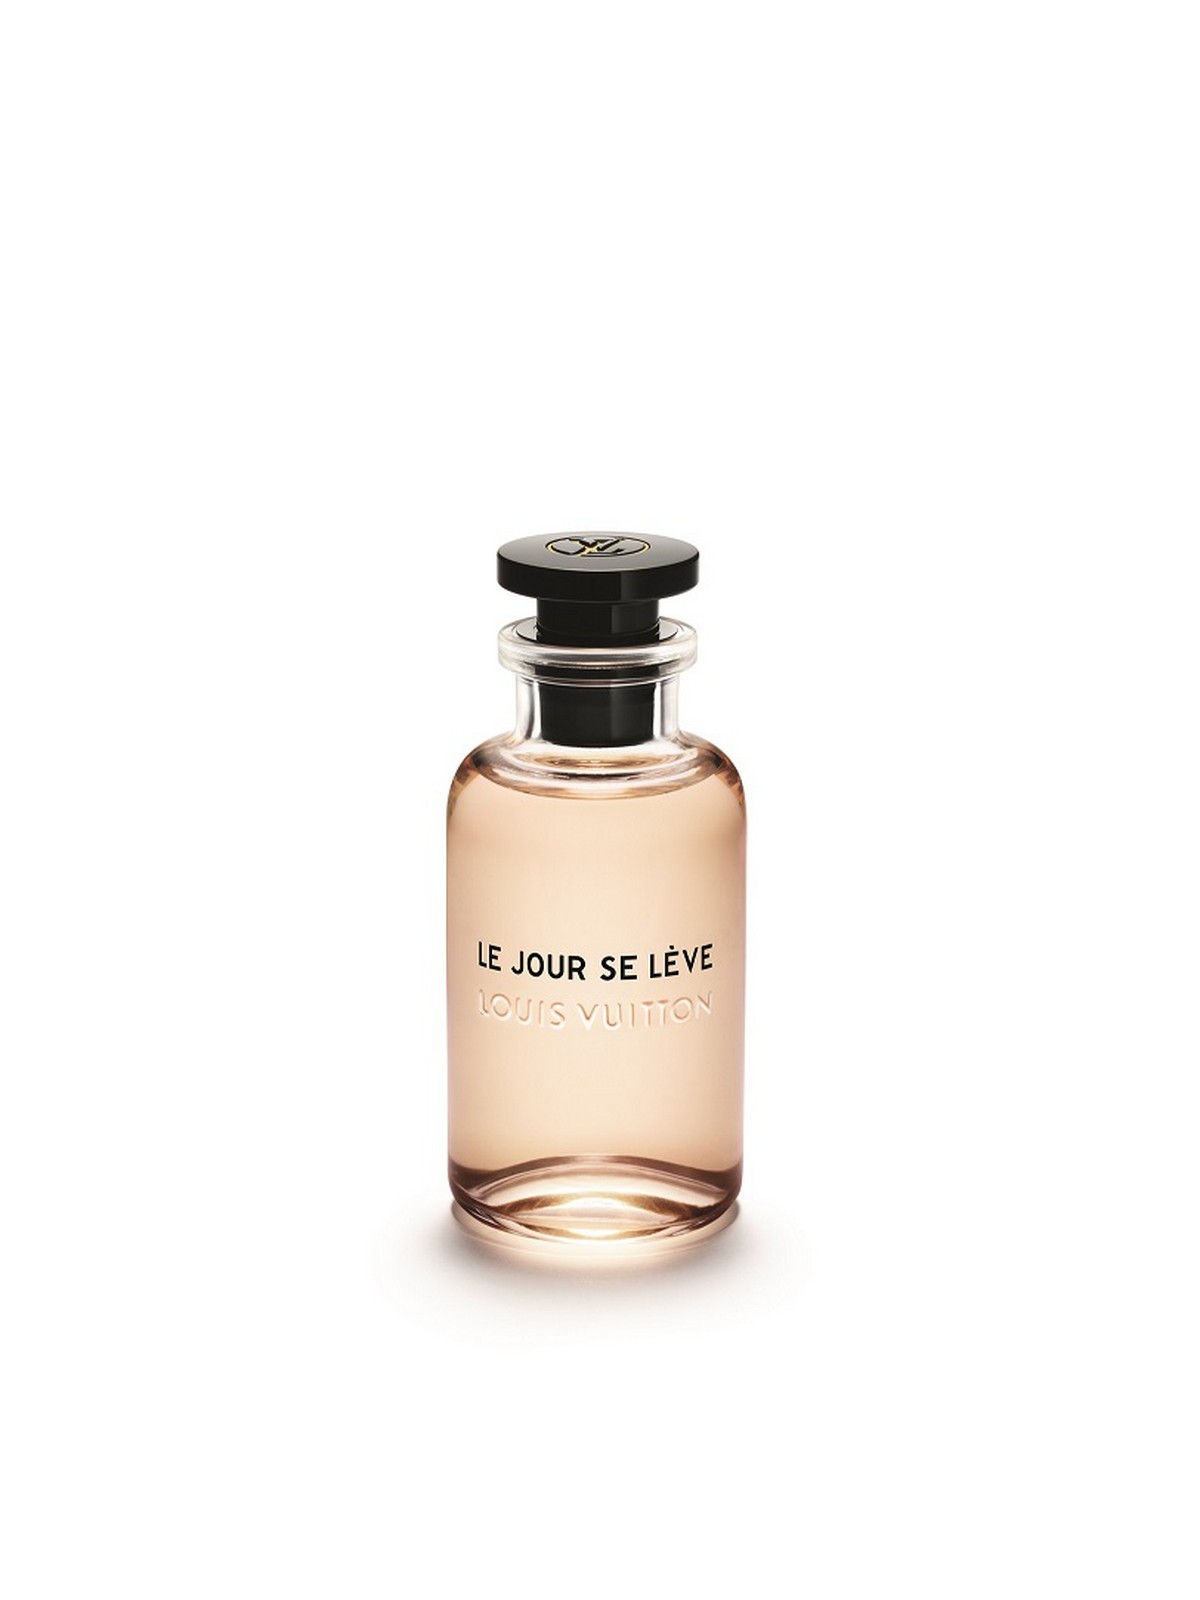 Les Parfums Louis Vuitton: il nuovo profumo Le Jour Se Lève – Fashion Times